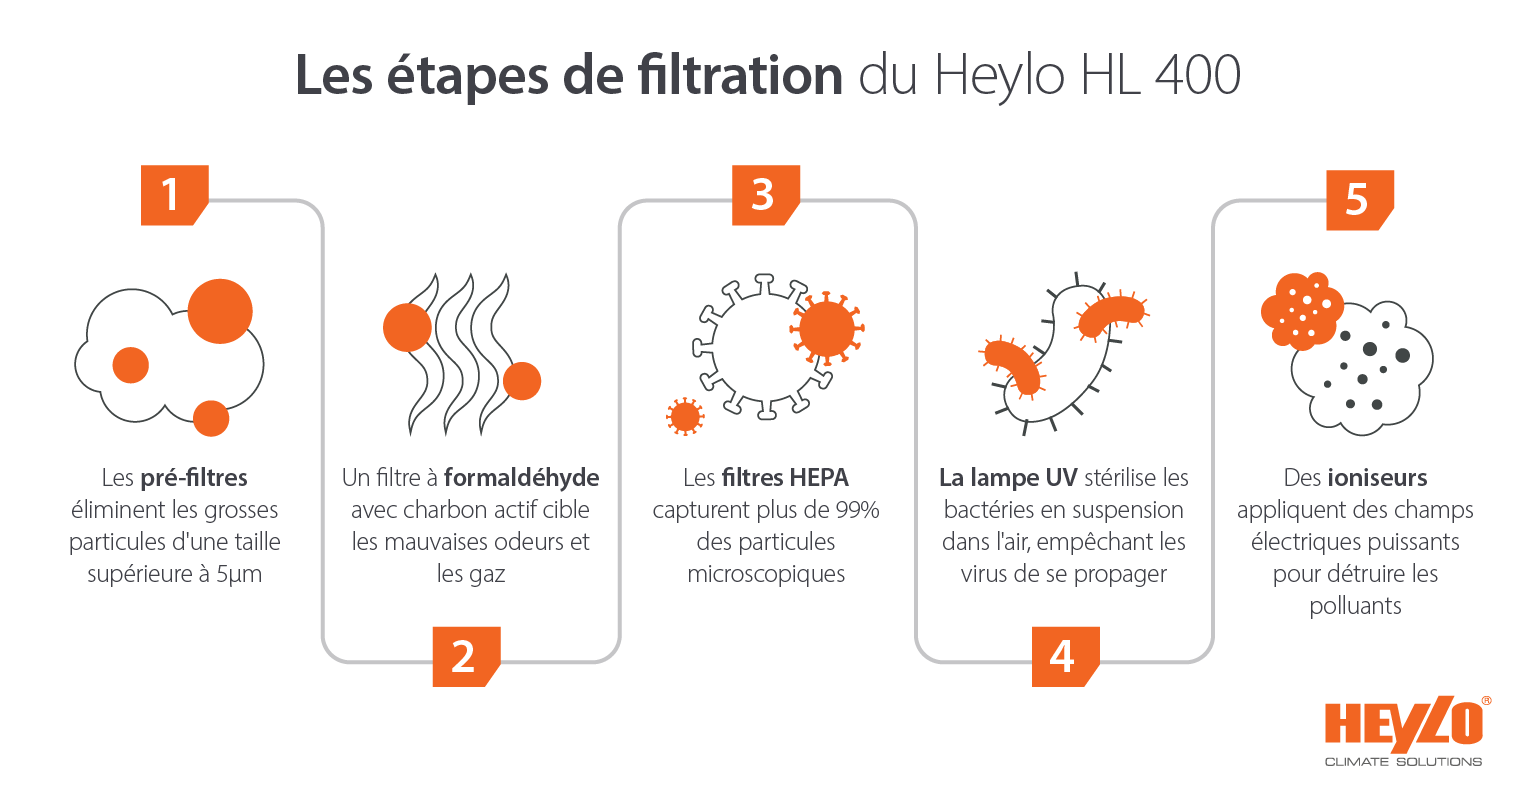 Les purificateurs d'air Heylo HL 400 : plusieurs étapes de filtration - Image infographique